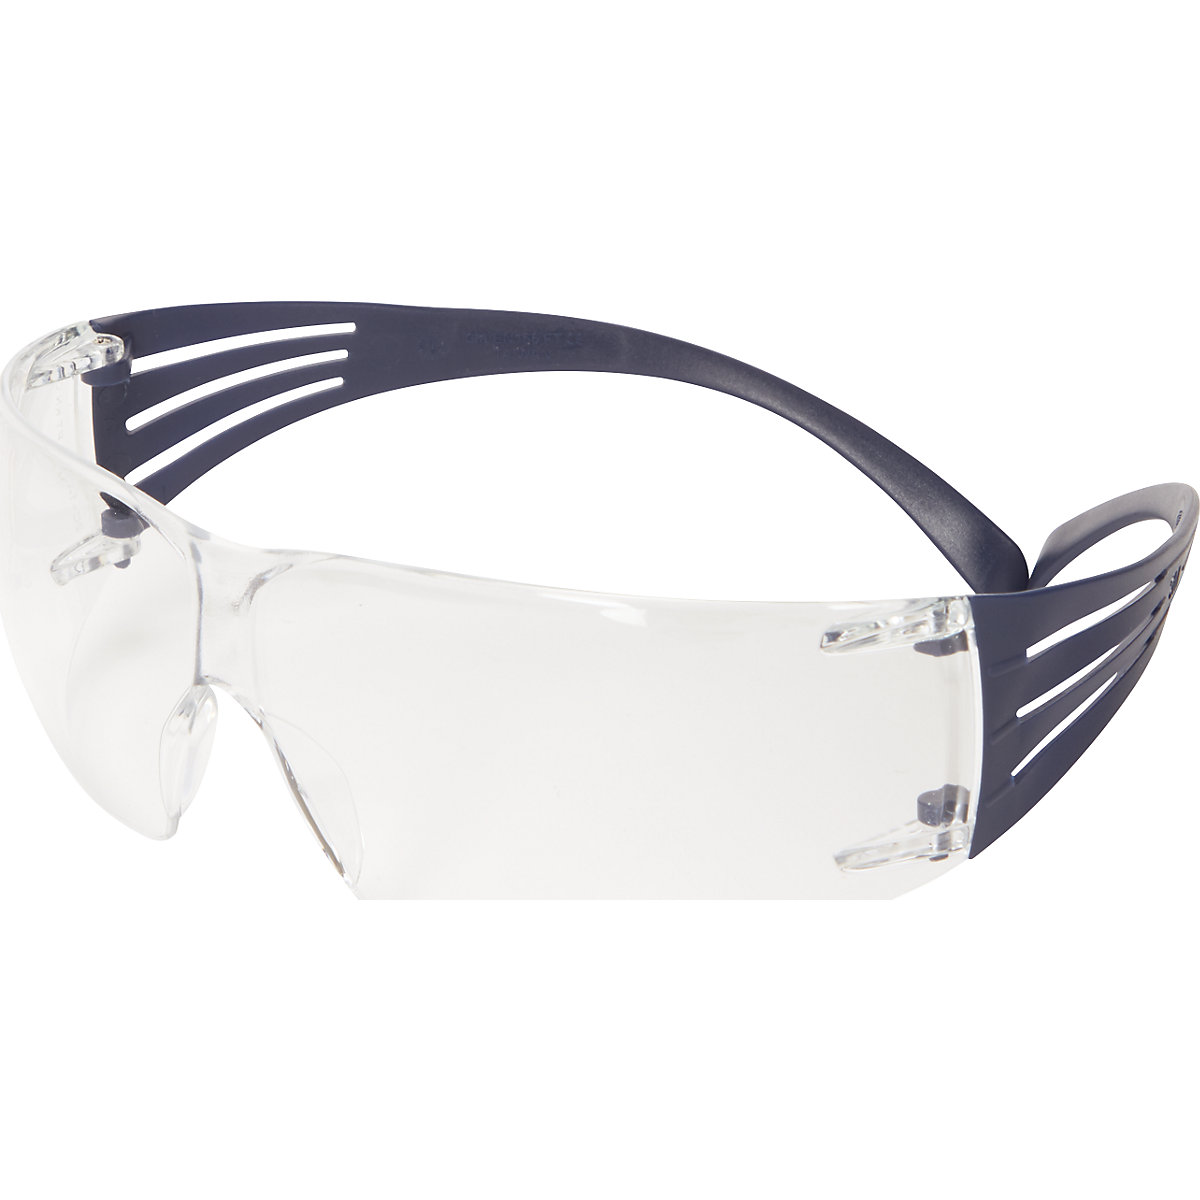 3M Schutzbrille SecureFit™ 200, Anti-Fog-Beschichtung, blau, klare Scheibe, ab 10 Stk